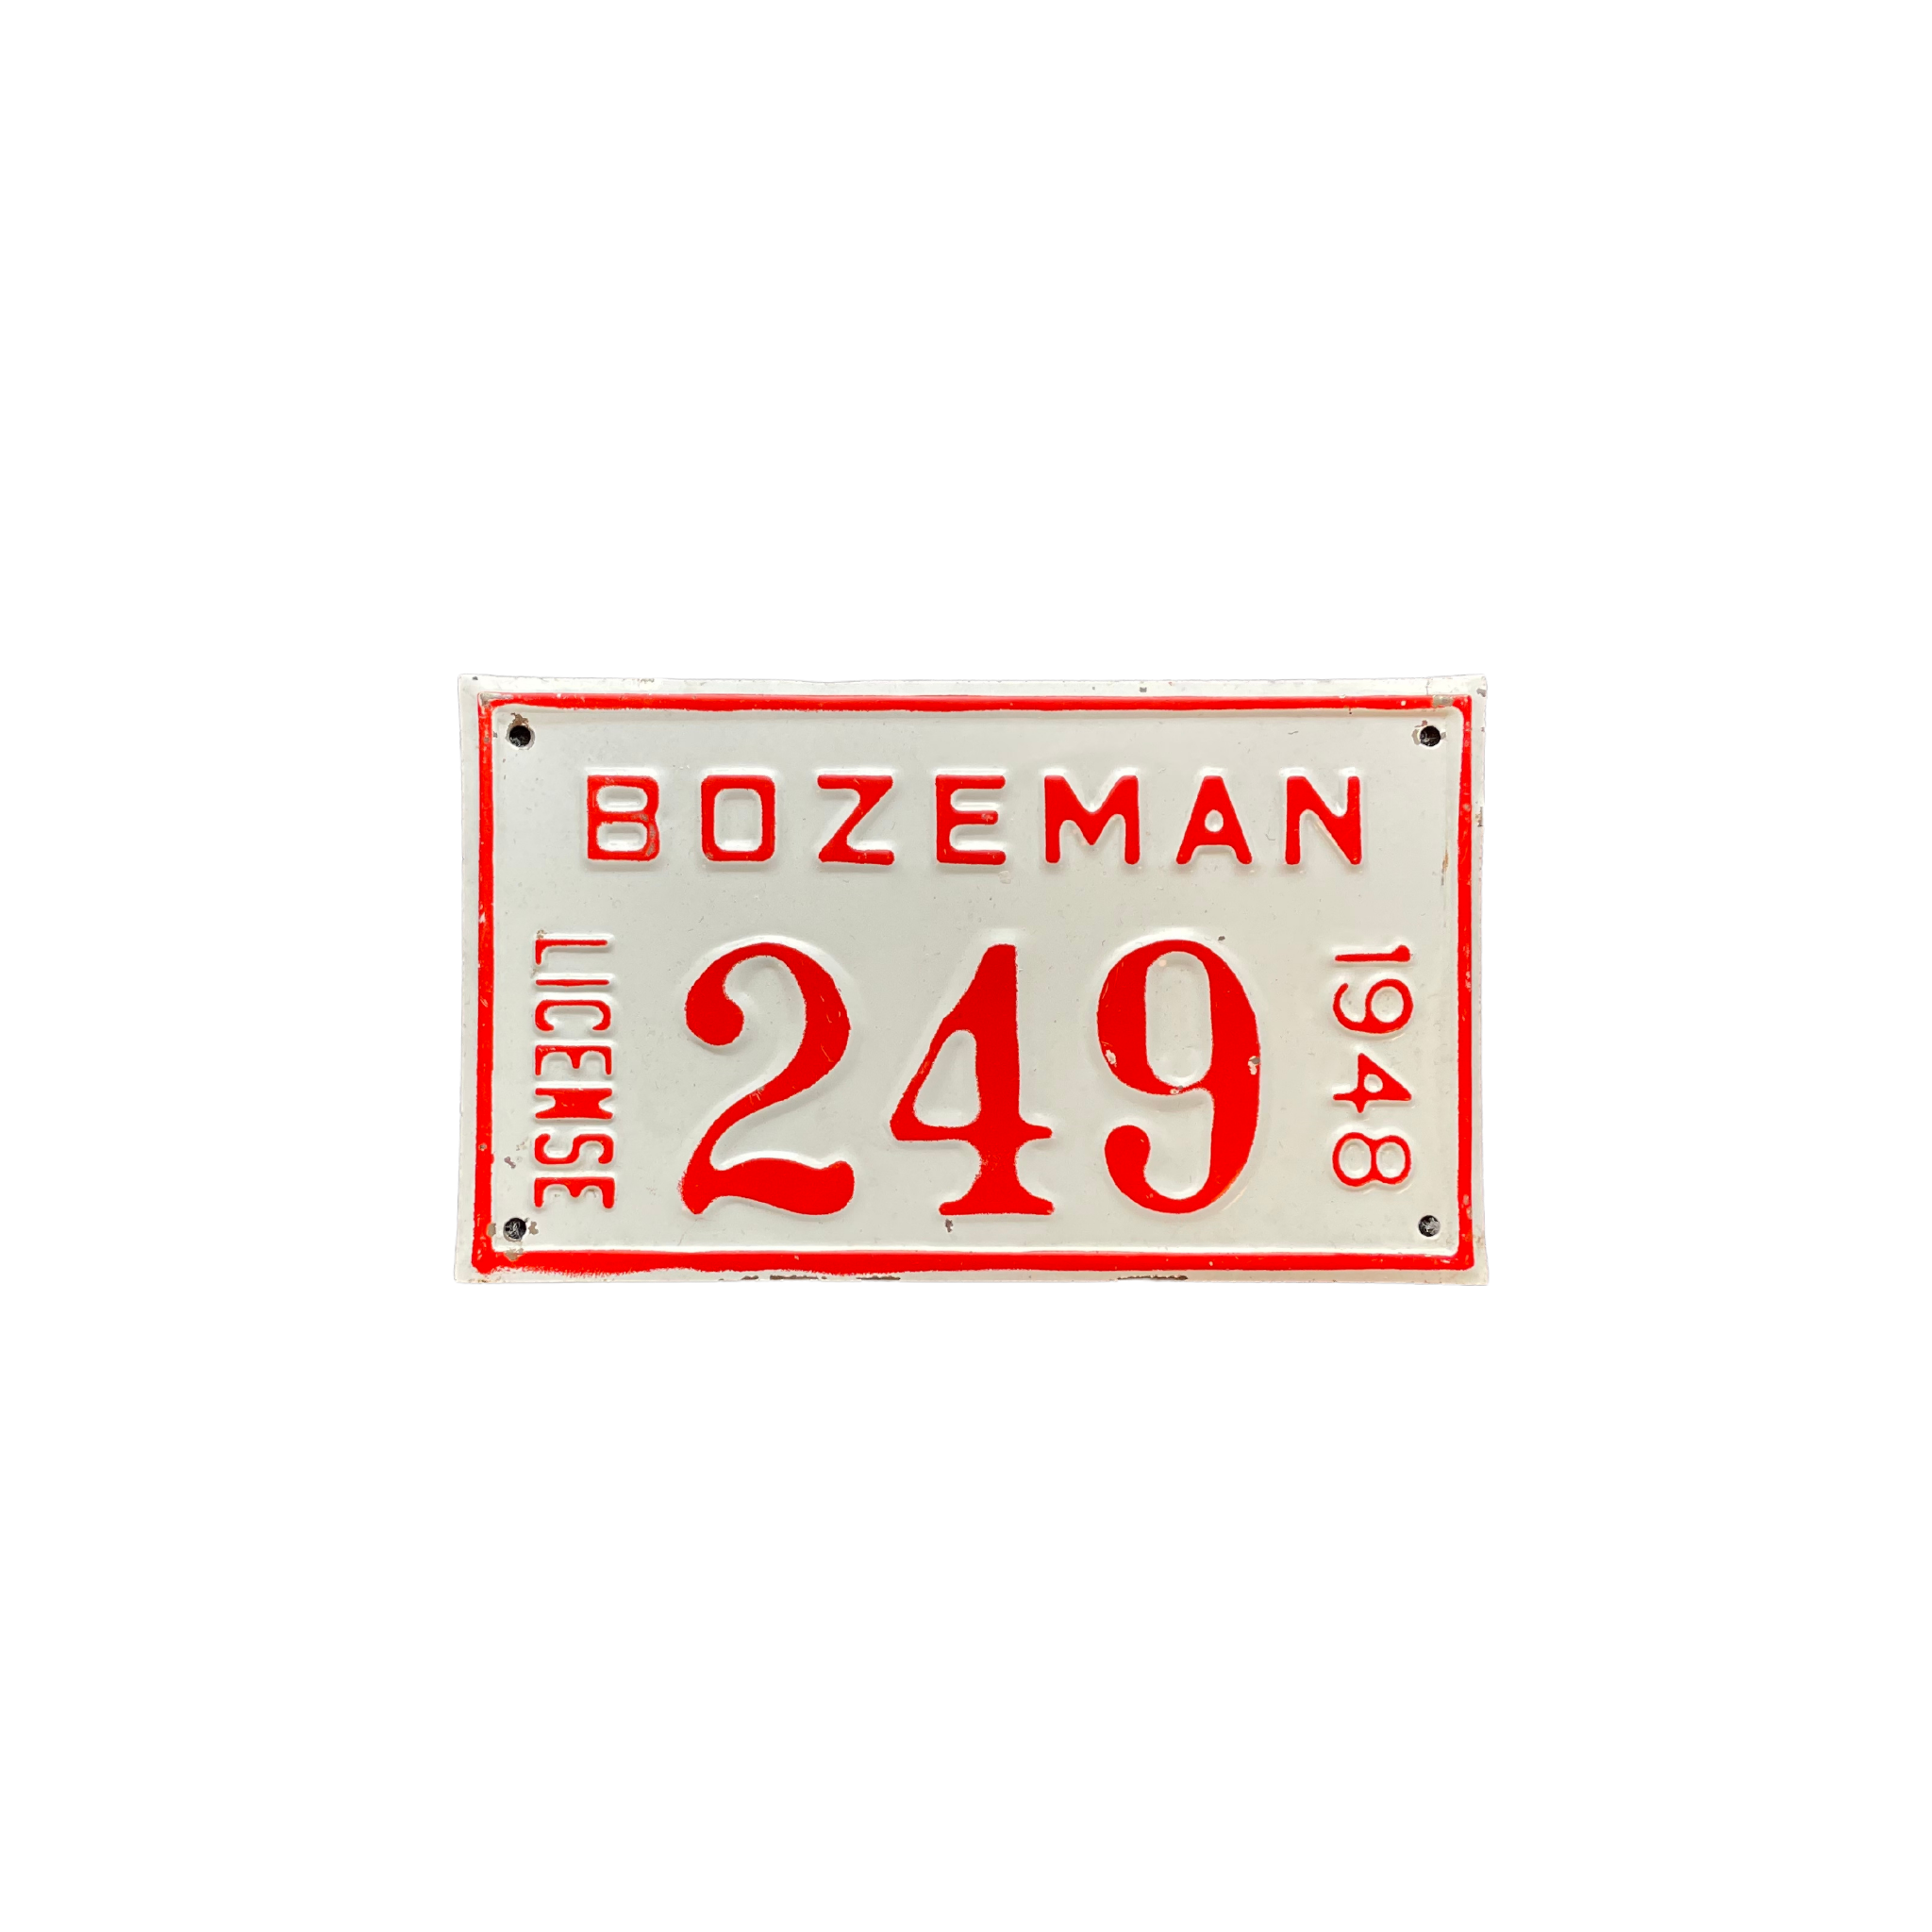 1940's Bozeman License Plates